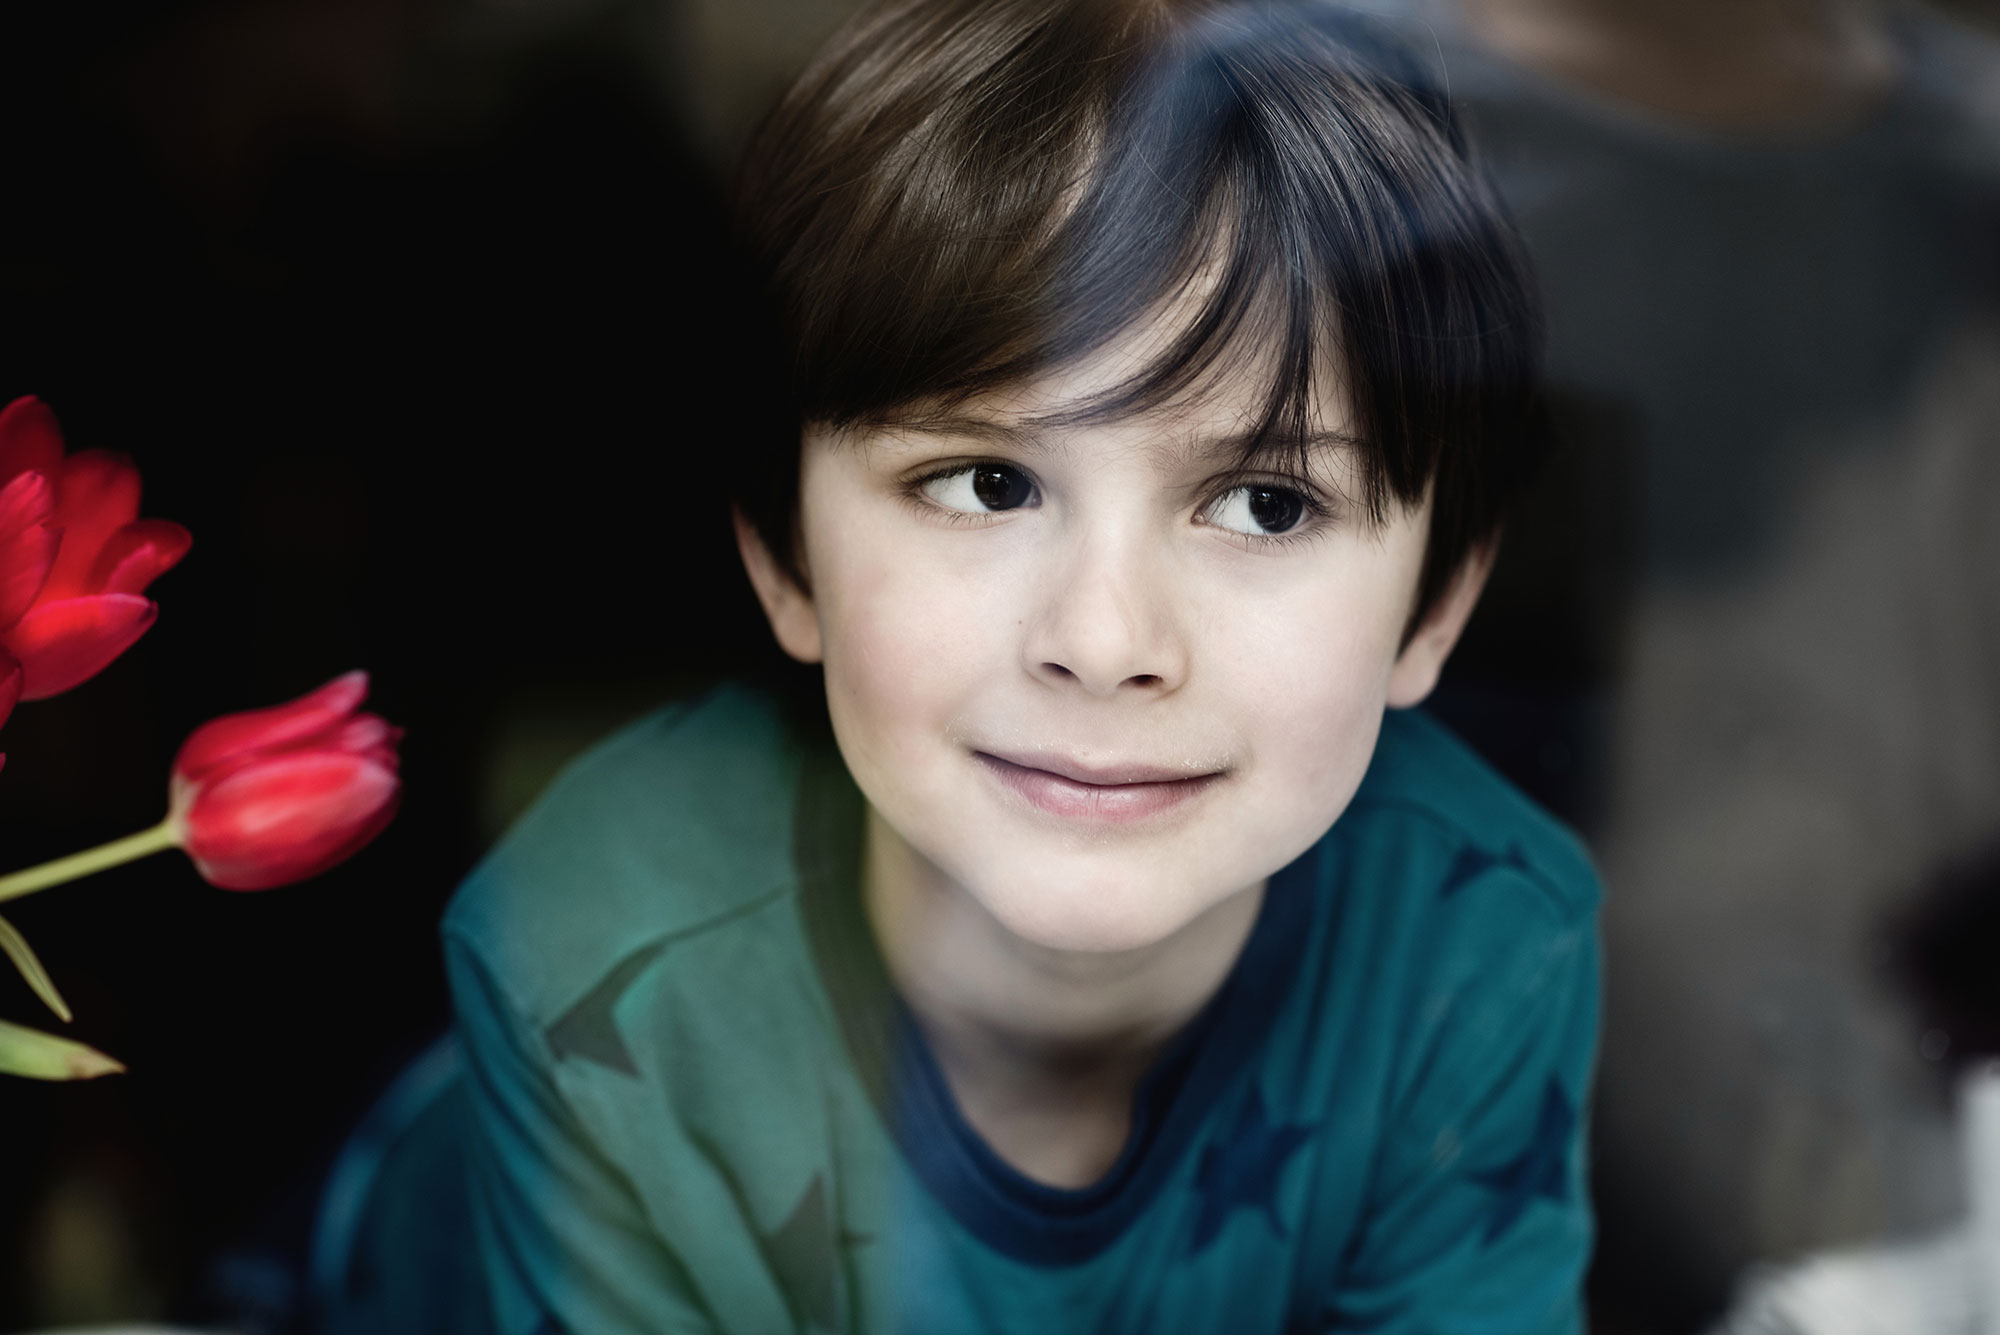 Porträtfotografie eines Jungen mit violetten Blumenhintergrund